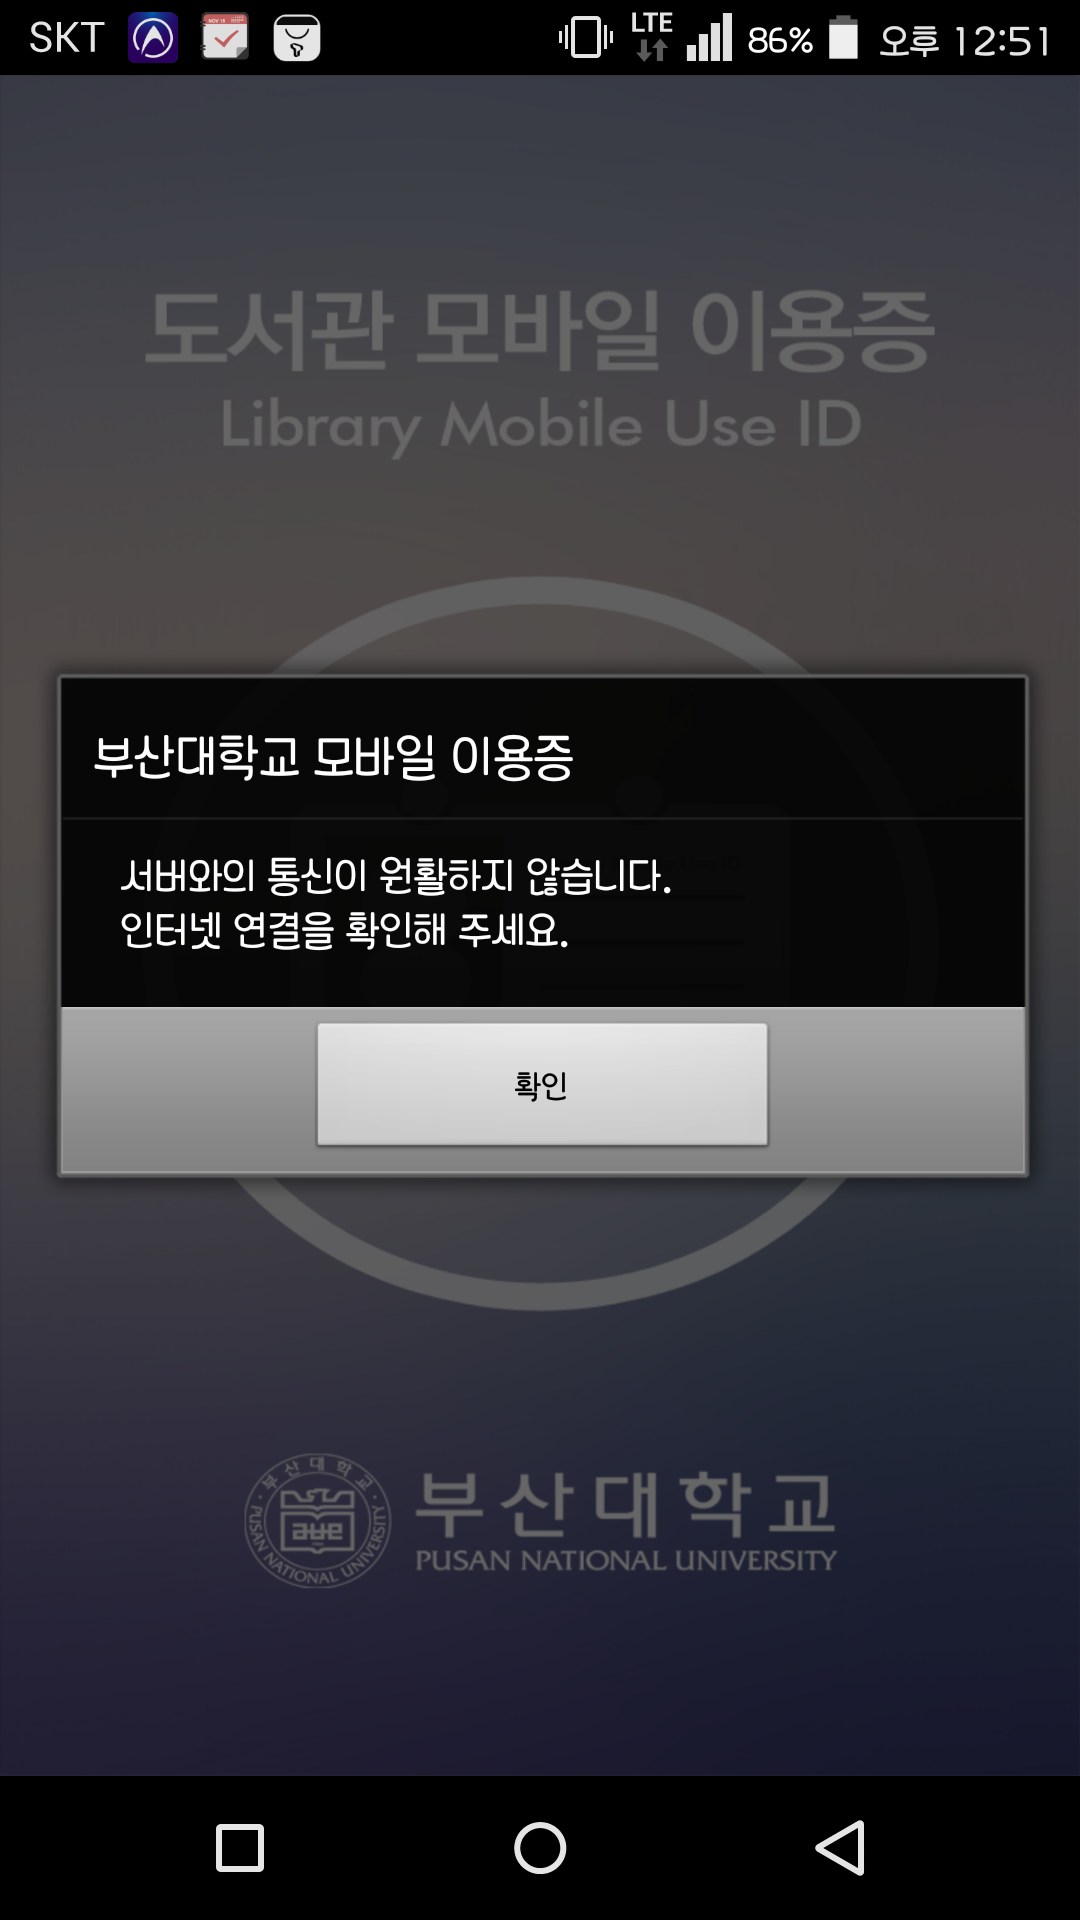 Screenshot_2016-02-25-12-51-52.png : 도서관 이용증 어플 저만 안되나요? ㅜ